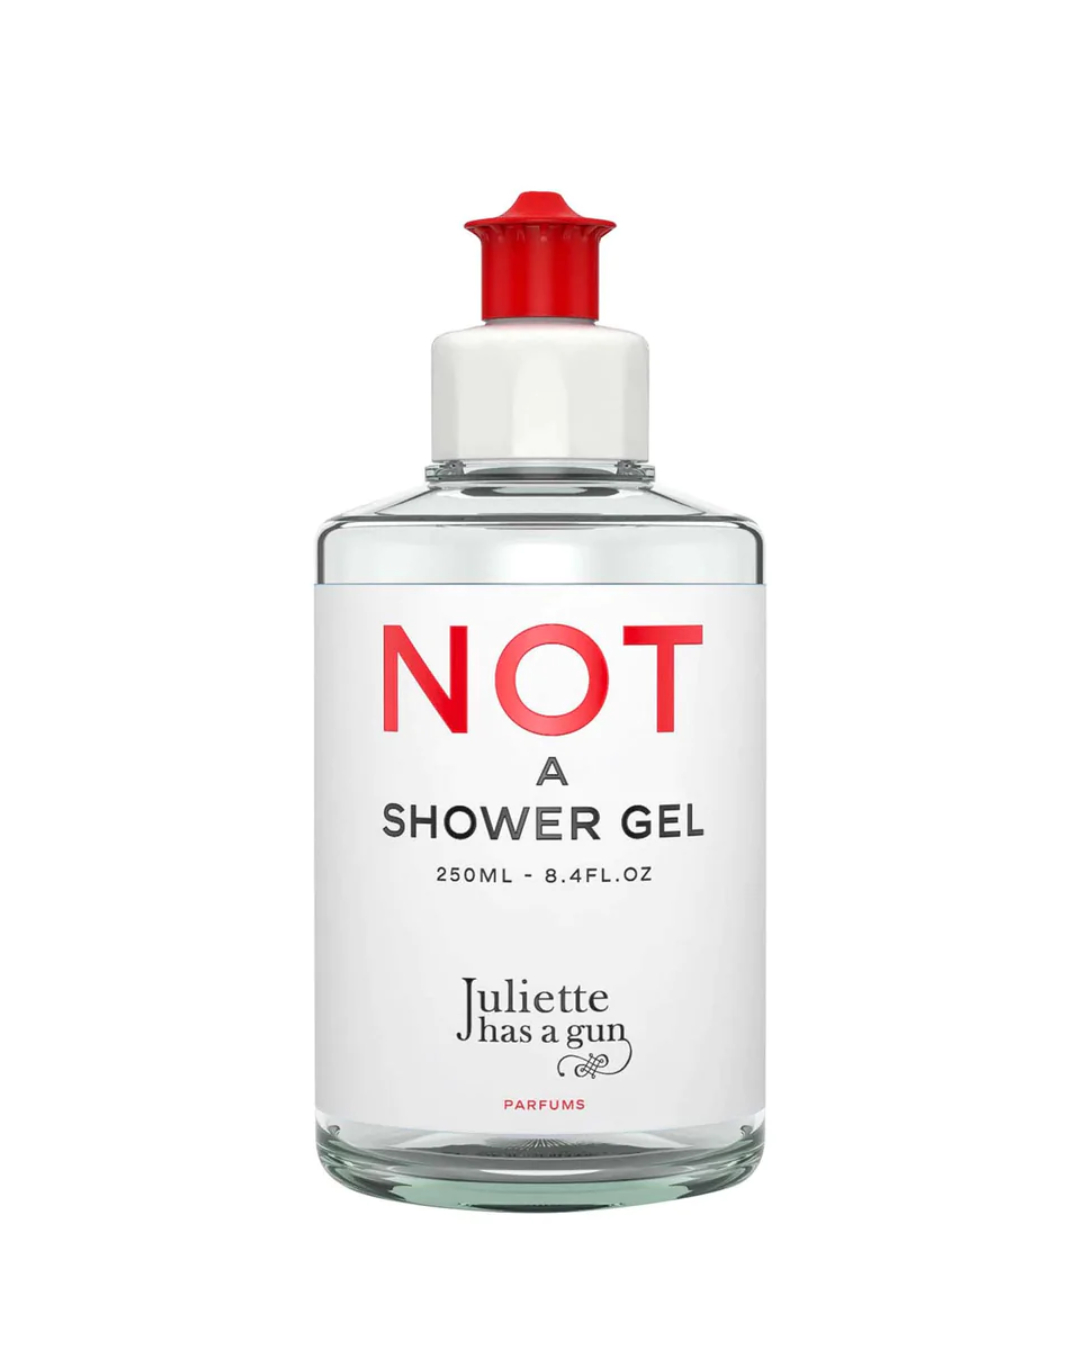 A bottle of shower gel.